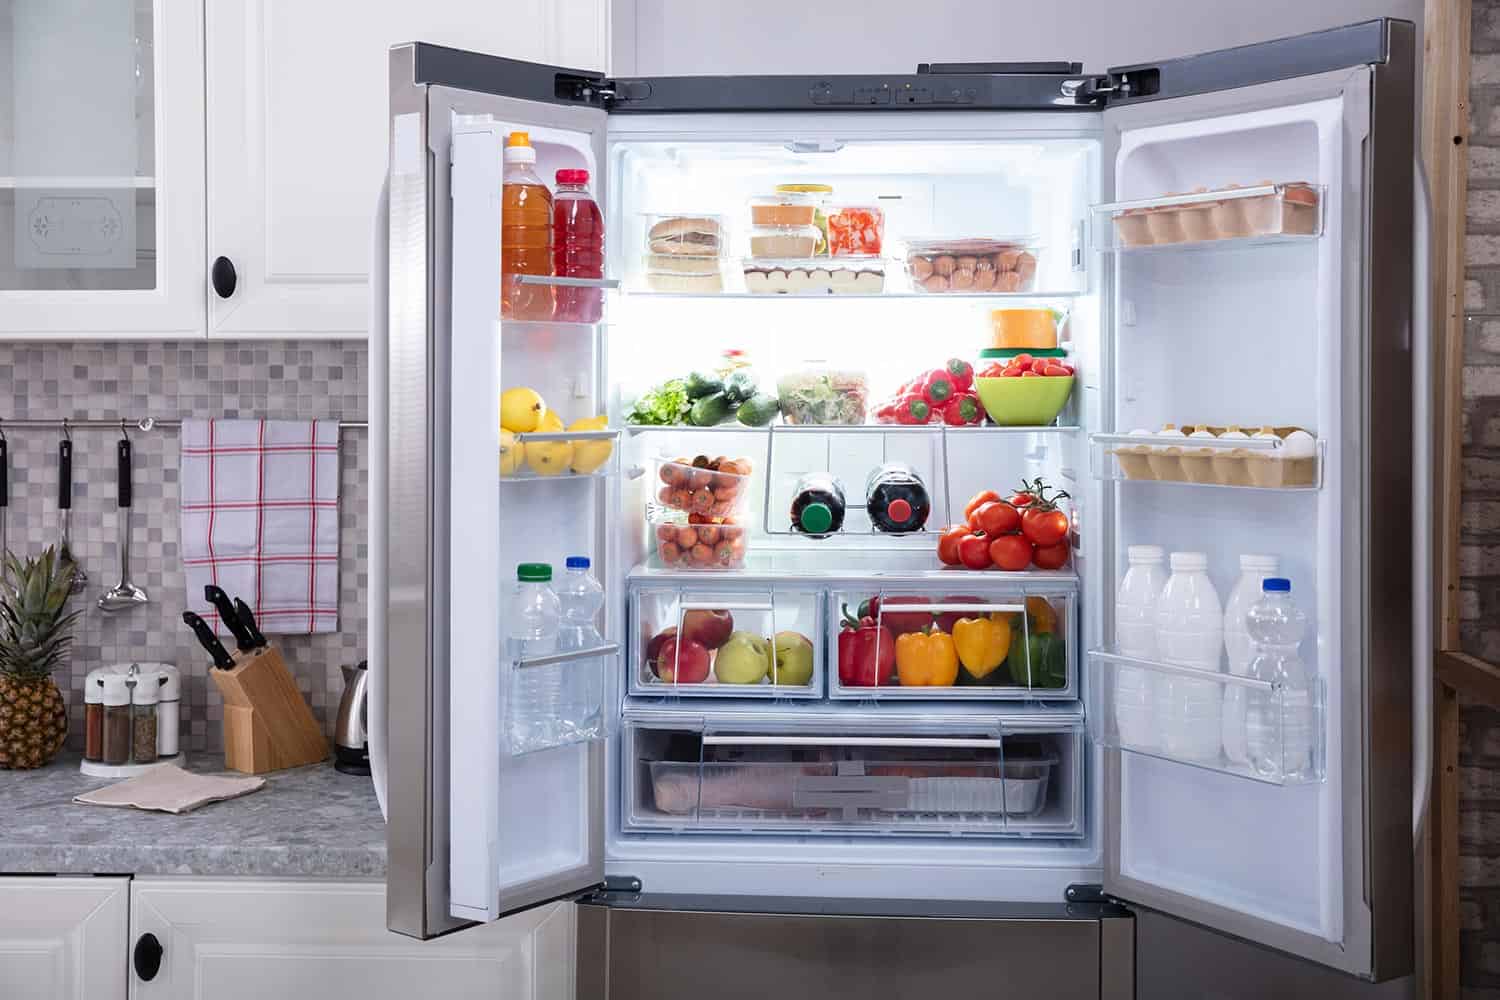 An open refrigerator